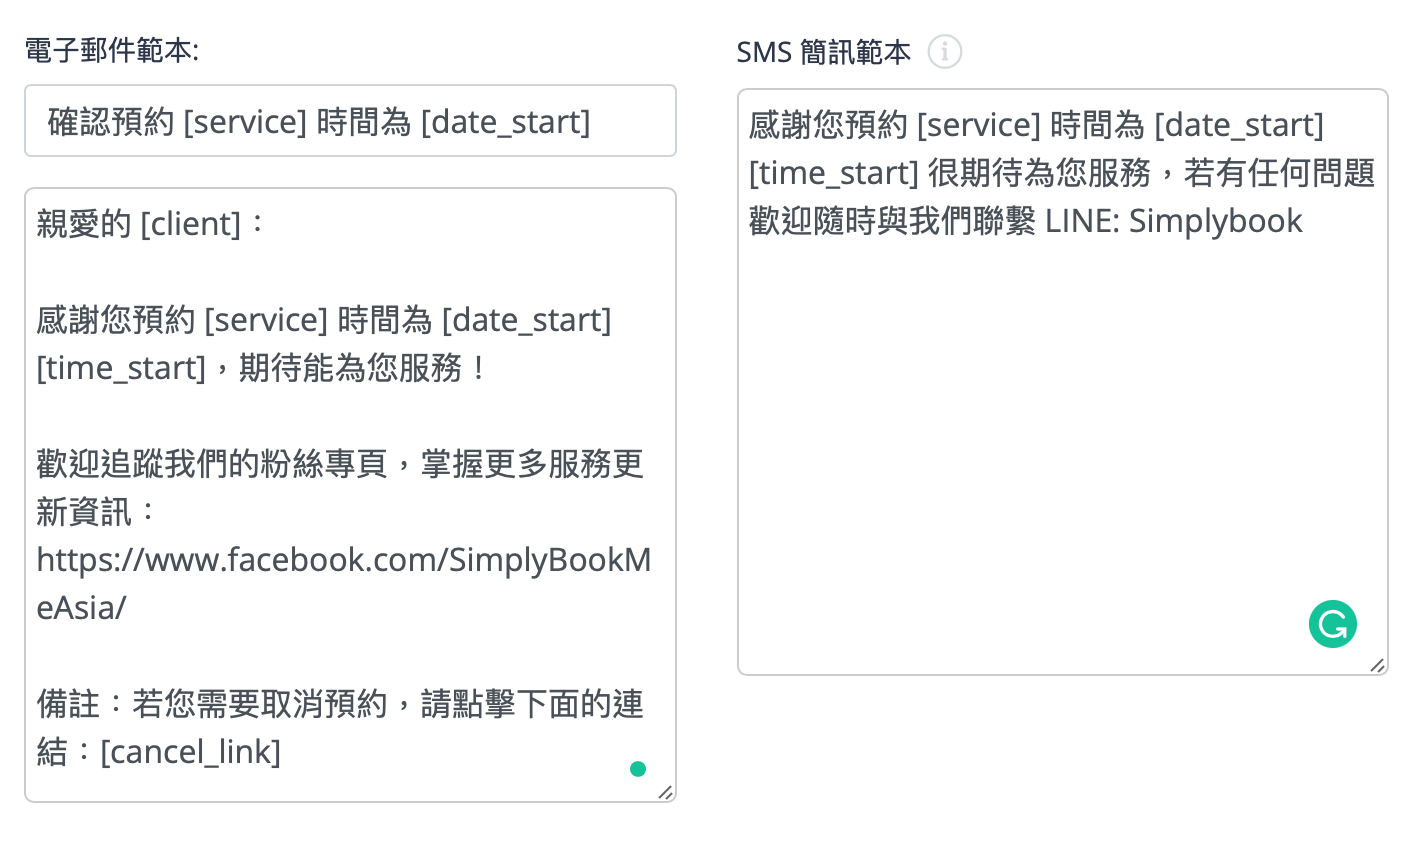 用 SimplyBook.me 輕鬆設定預約提醒！向客戶發送自動化通知，降低營運成本！